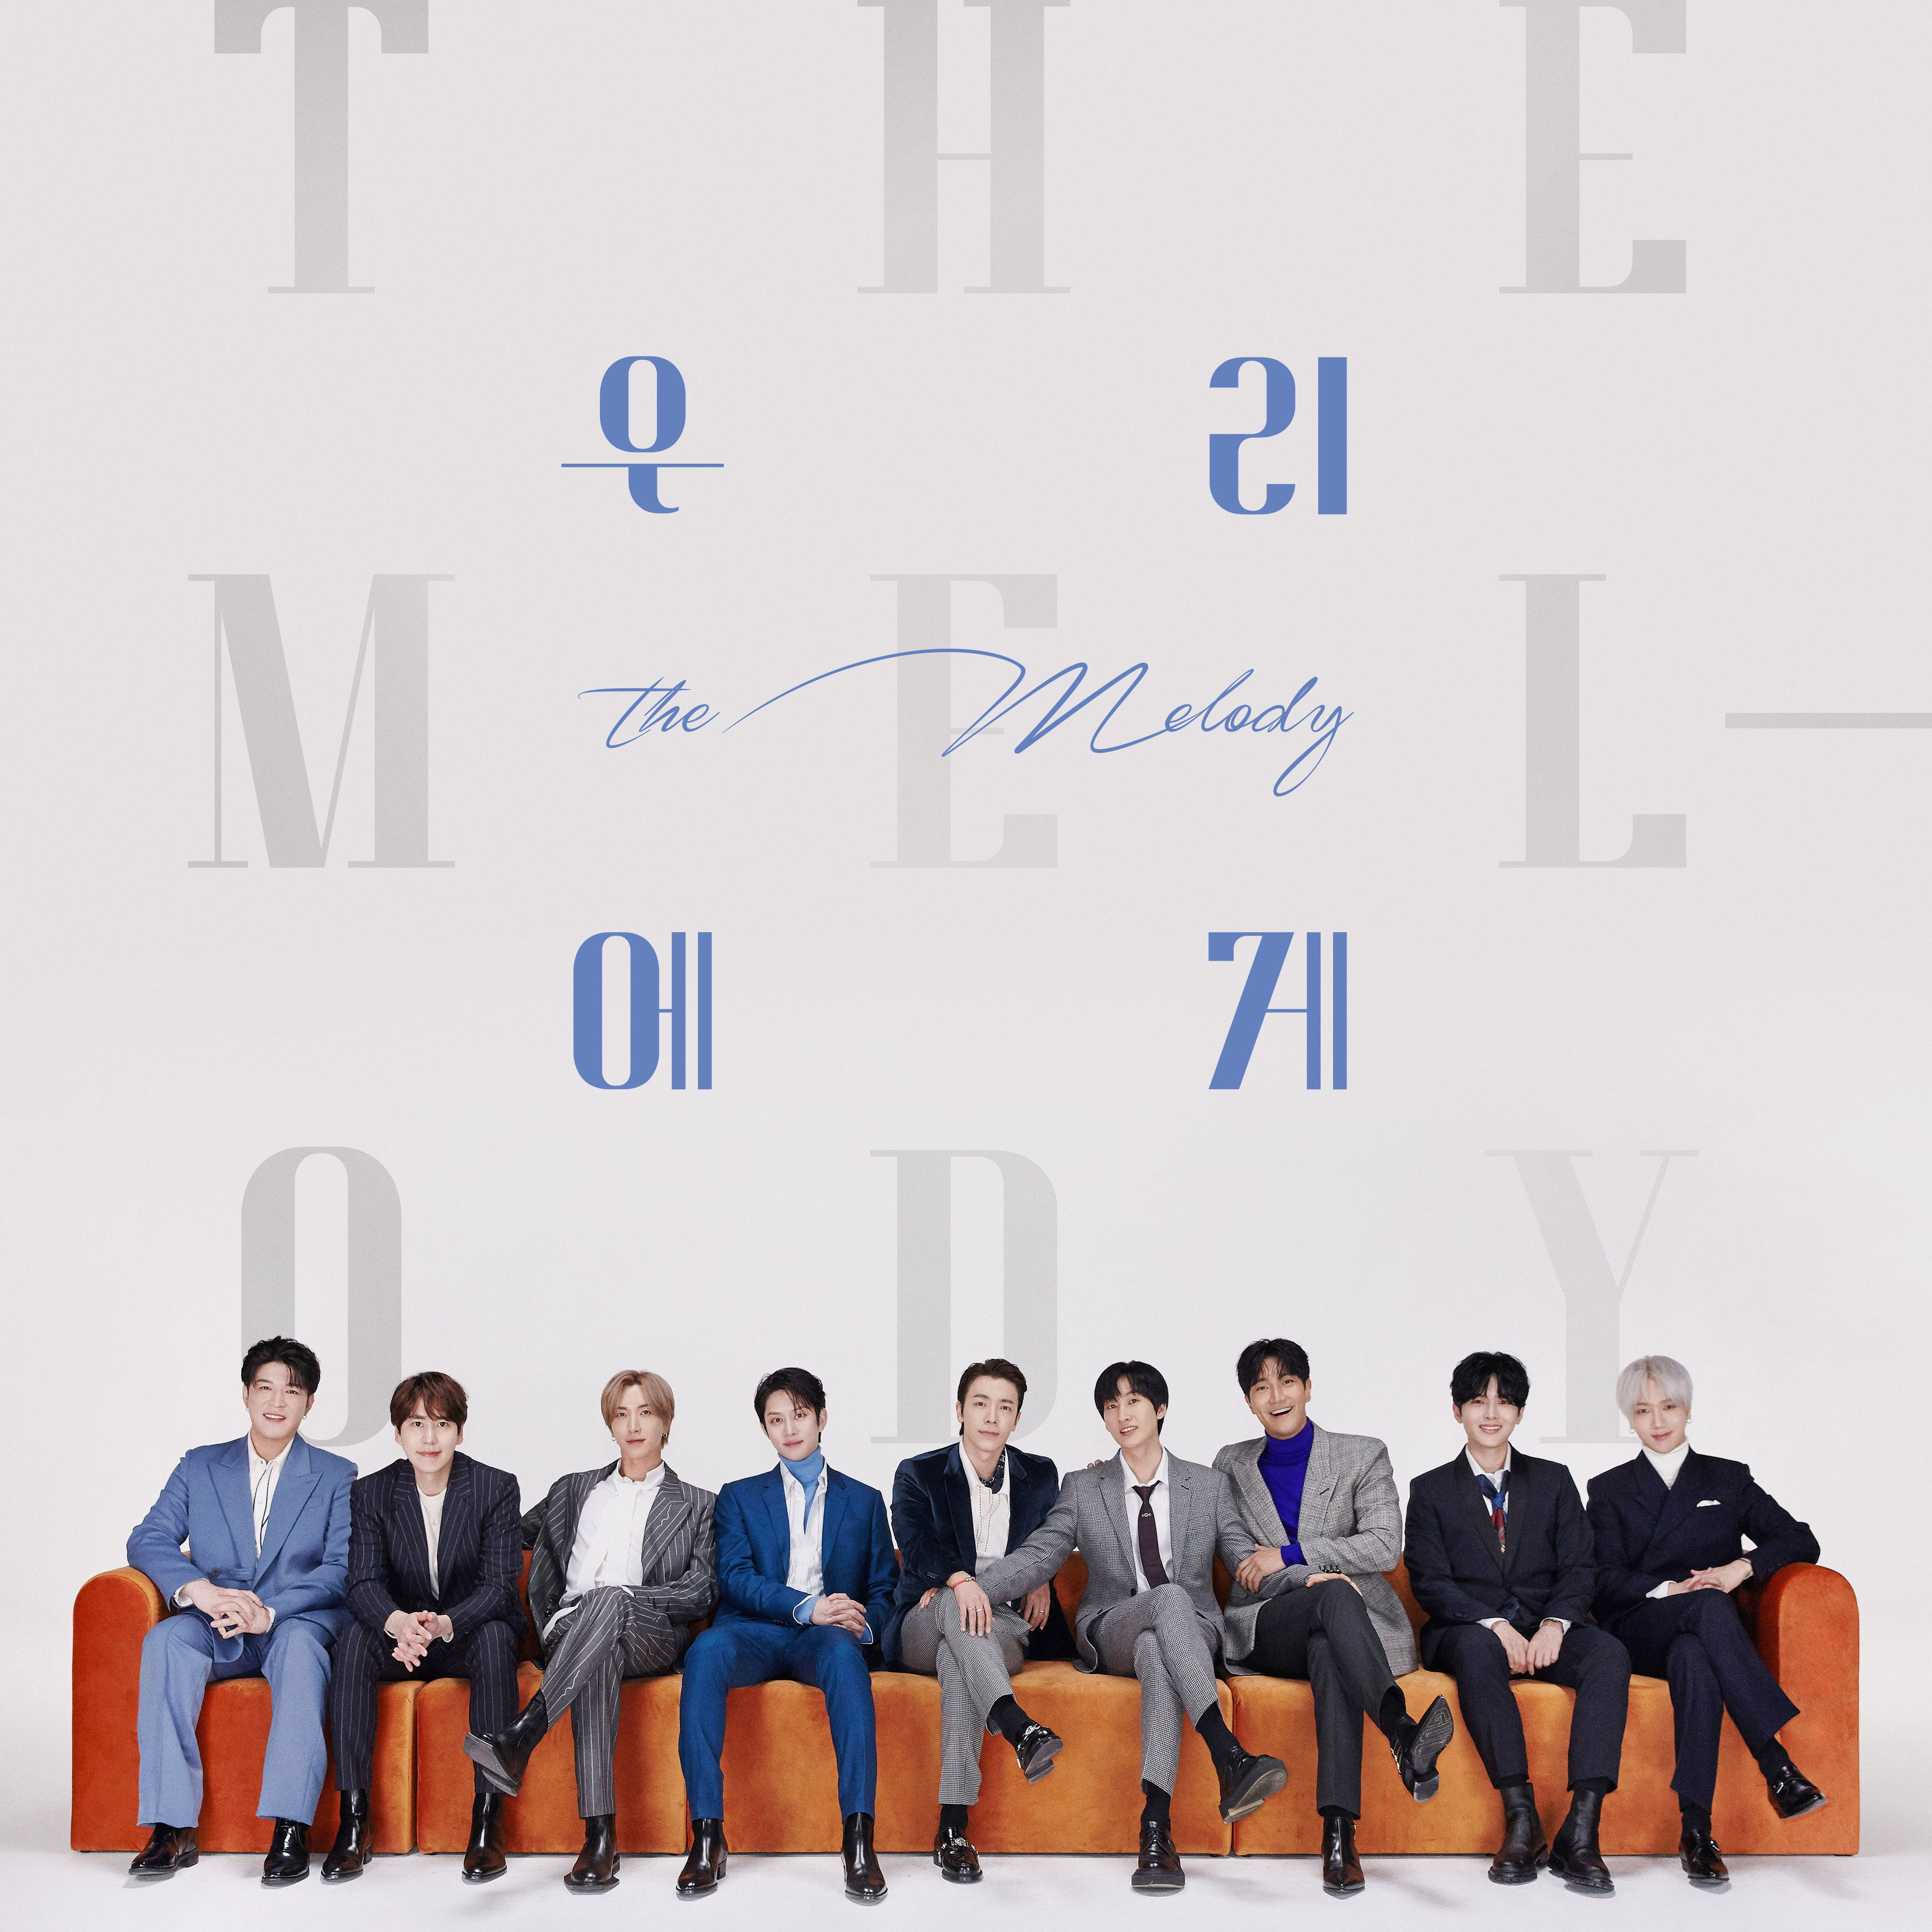 [影音] Super Junior - The Melody (先行曲)